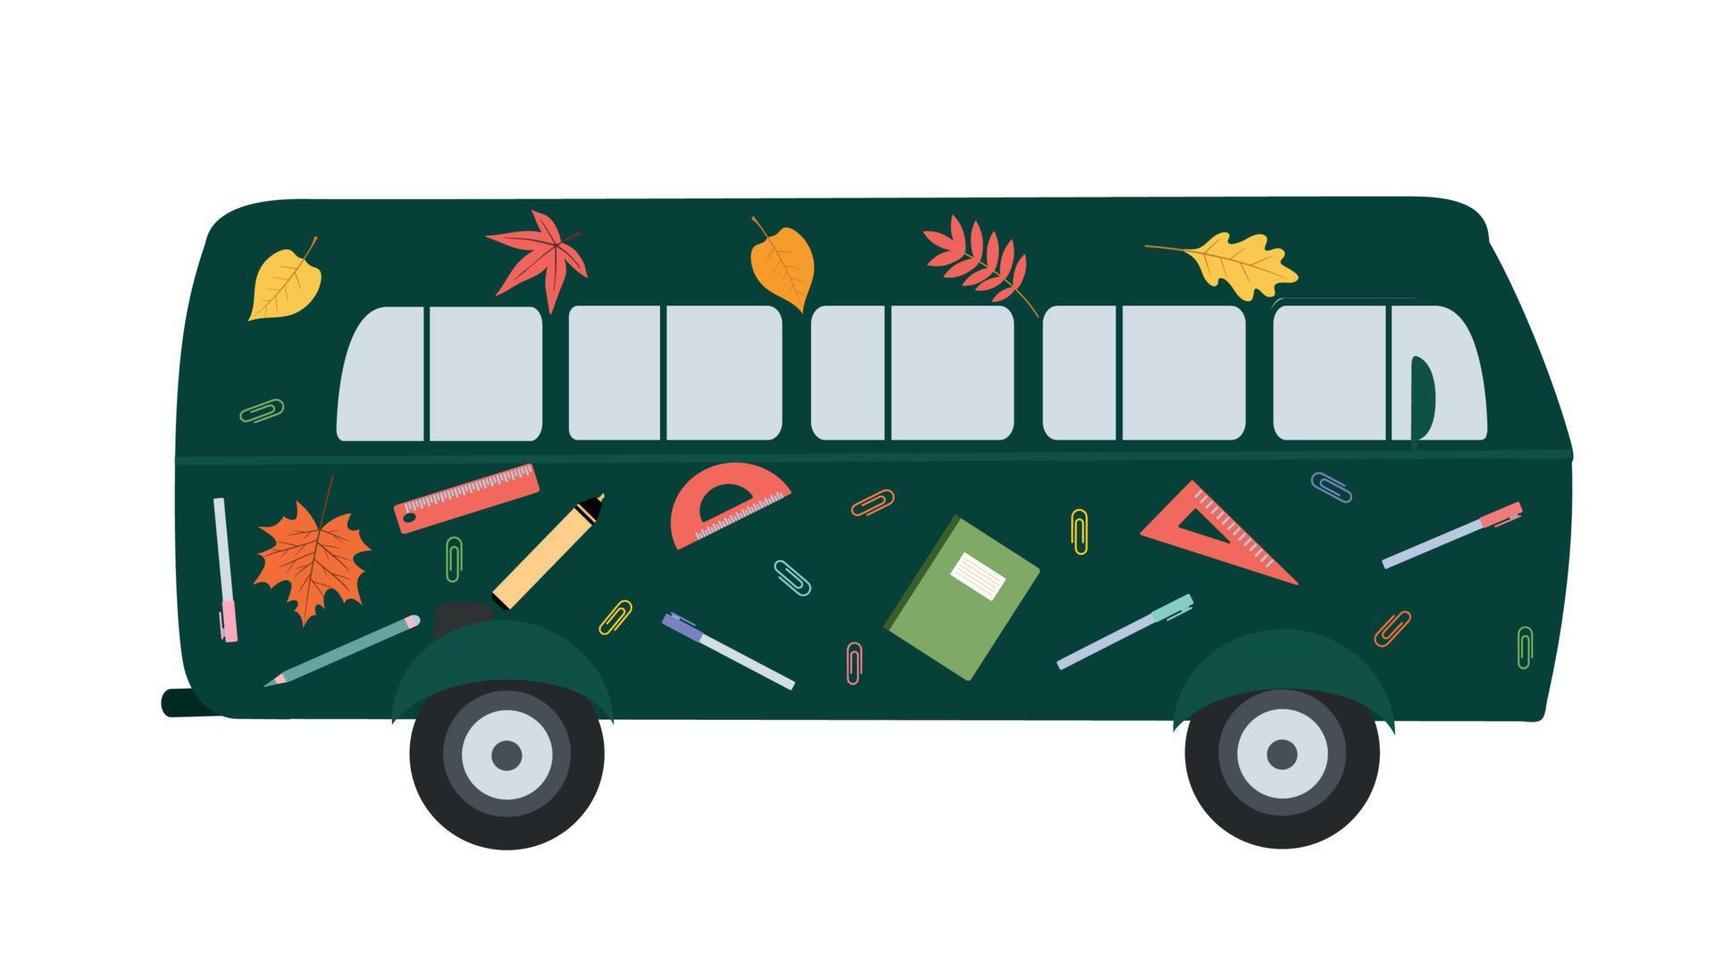 conception vectorielle d'un bus plat avec des dessins de fournitures scolaires sur le bus. retour à l'école vecteur